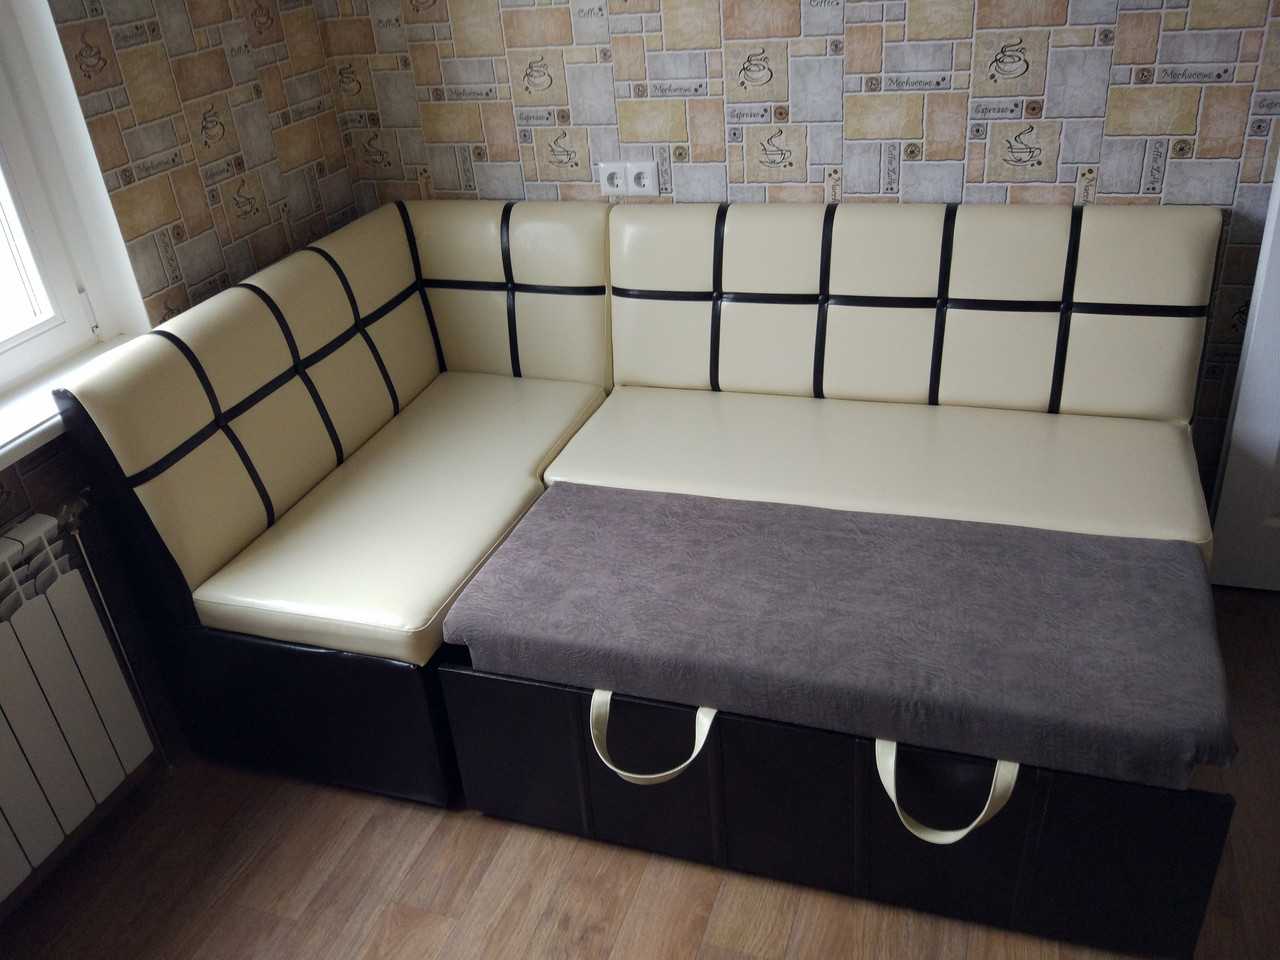 Угловой диван на кухню со спальным местом